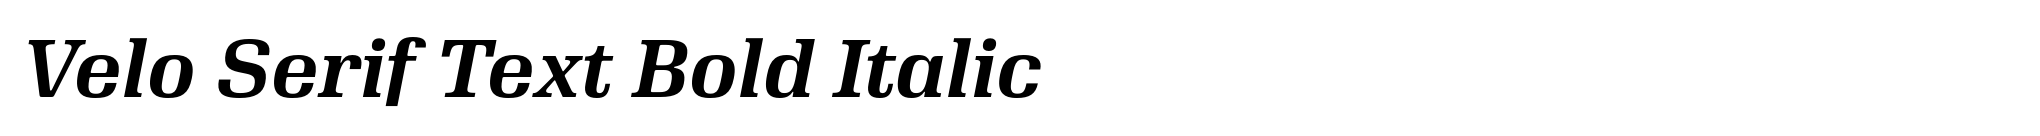 Velo Serif Text Bold Italic image